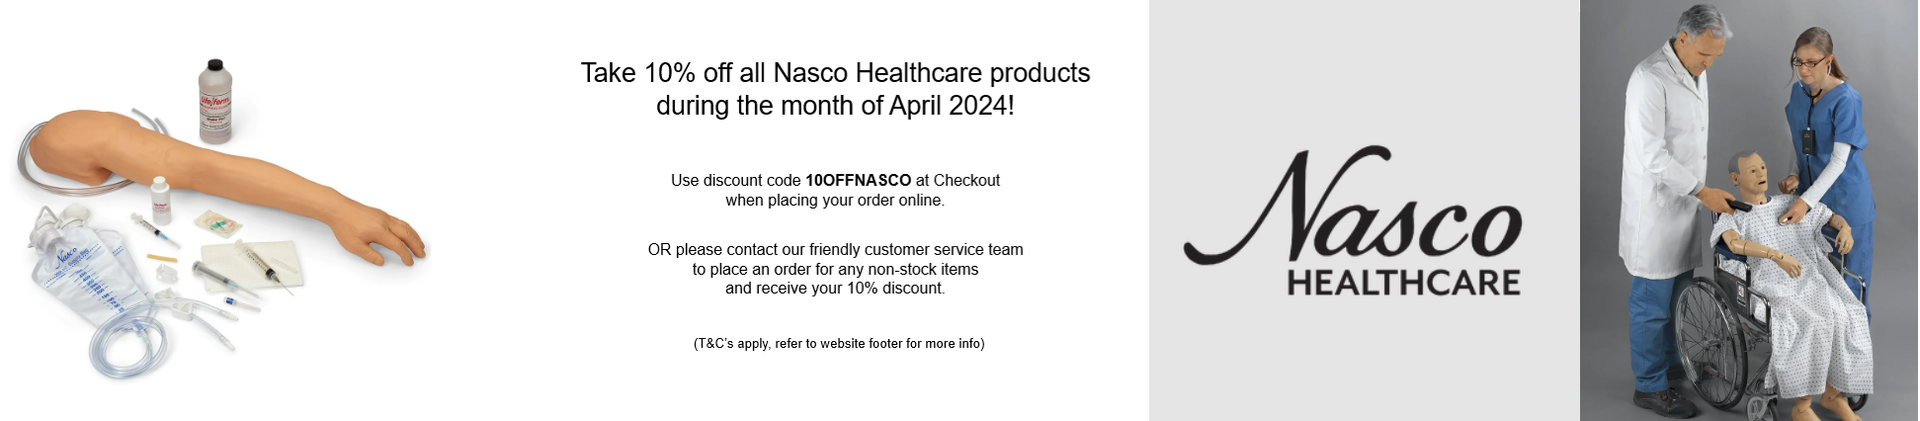 Nasco Healthcare ON SALE NOW!